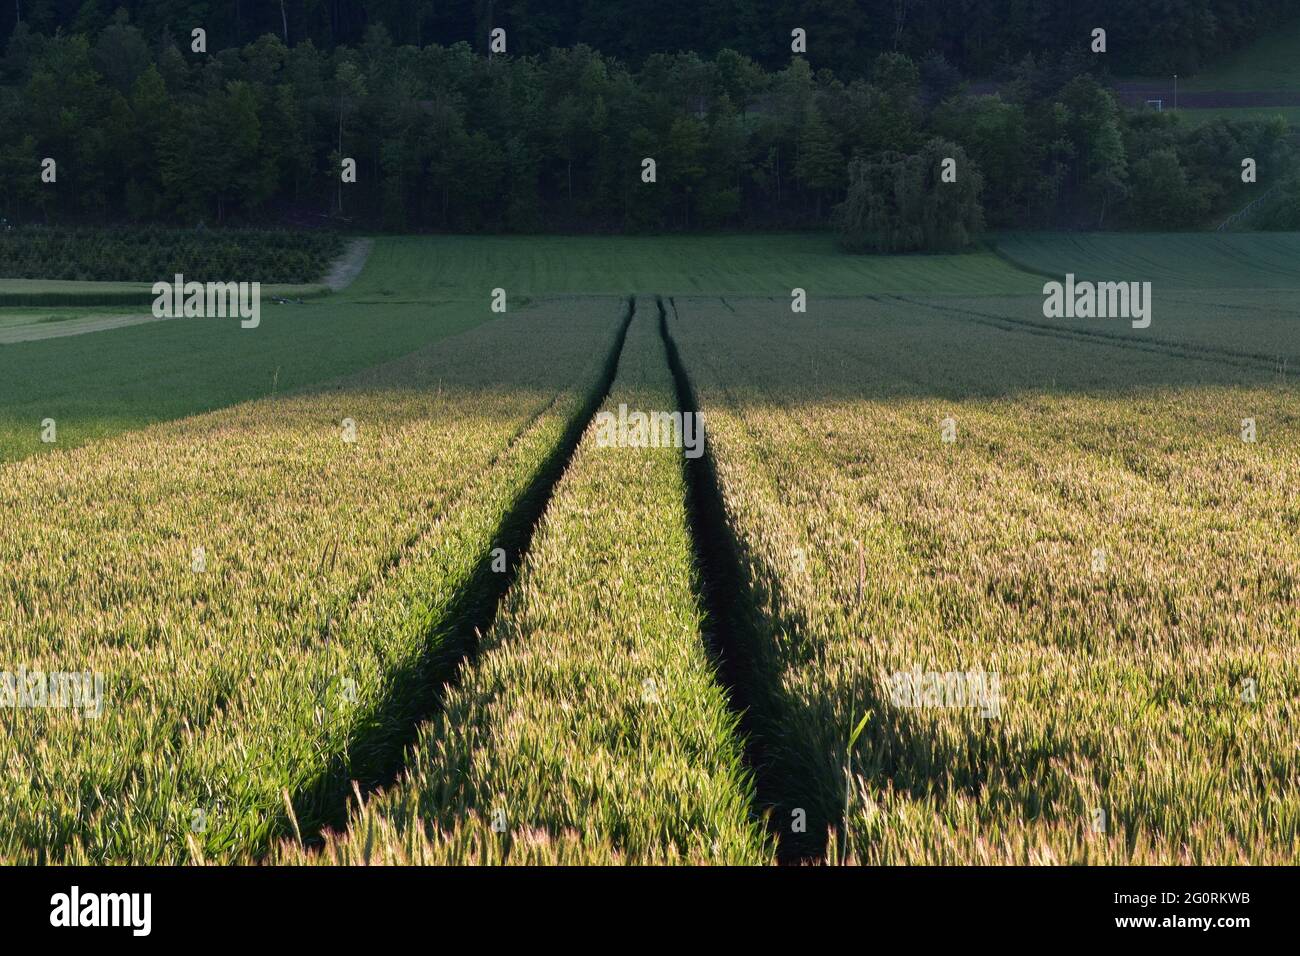 Landwirtschaftliche Feld mit Spuren von einem zweigleisigen Fahrzeug, die in der Perspektive treffen. Im Hintergrund gibt es Mischwald. Stockfoto